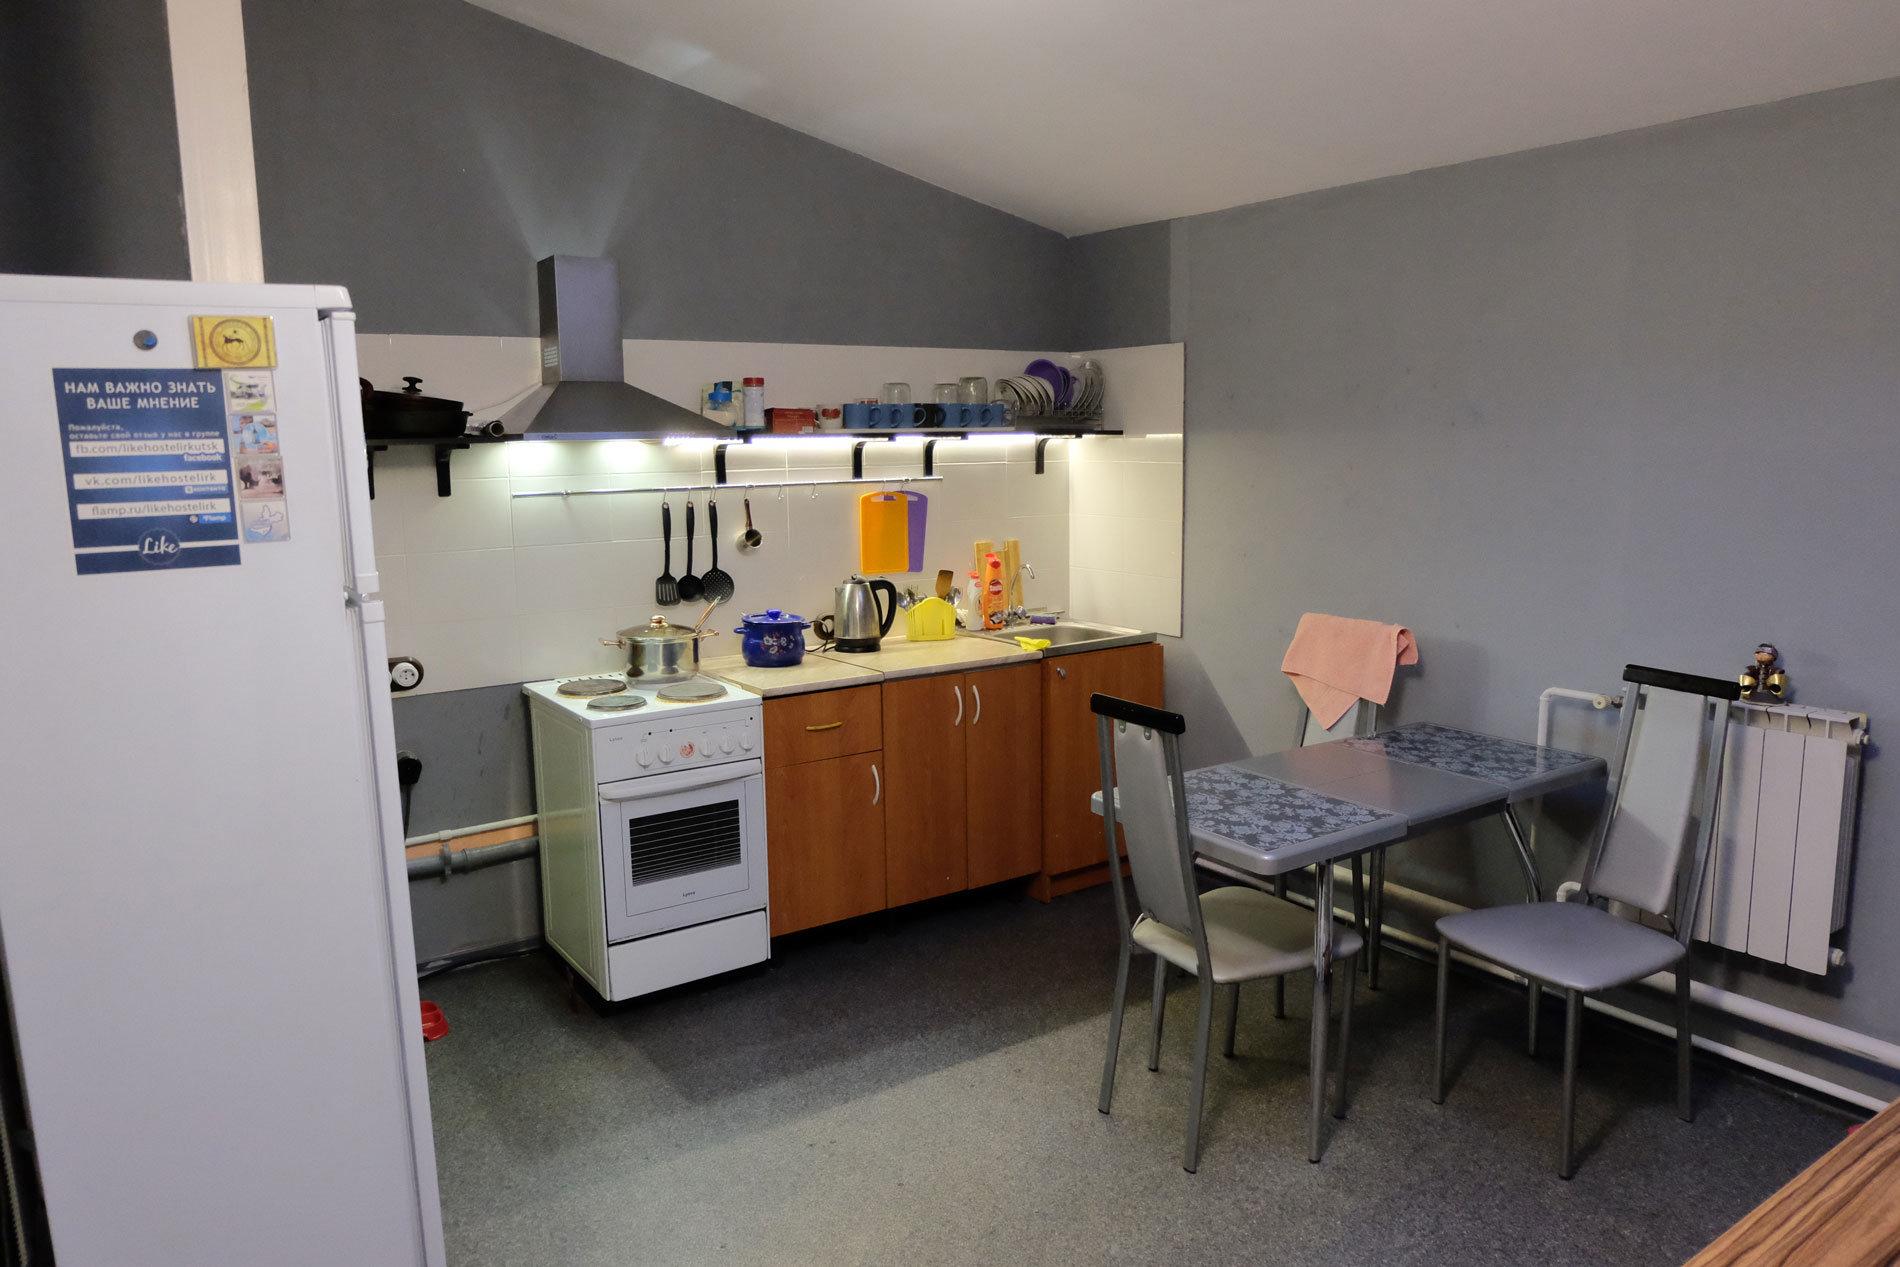 Общая кухня в общежитии. Кухня хостела. Кухня в общежитии. Кухни в хостелах. Кухня в студенческом общежитии.